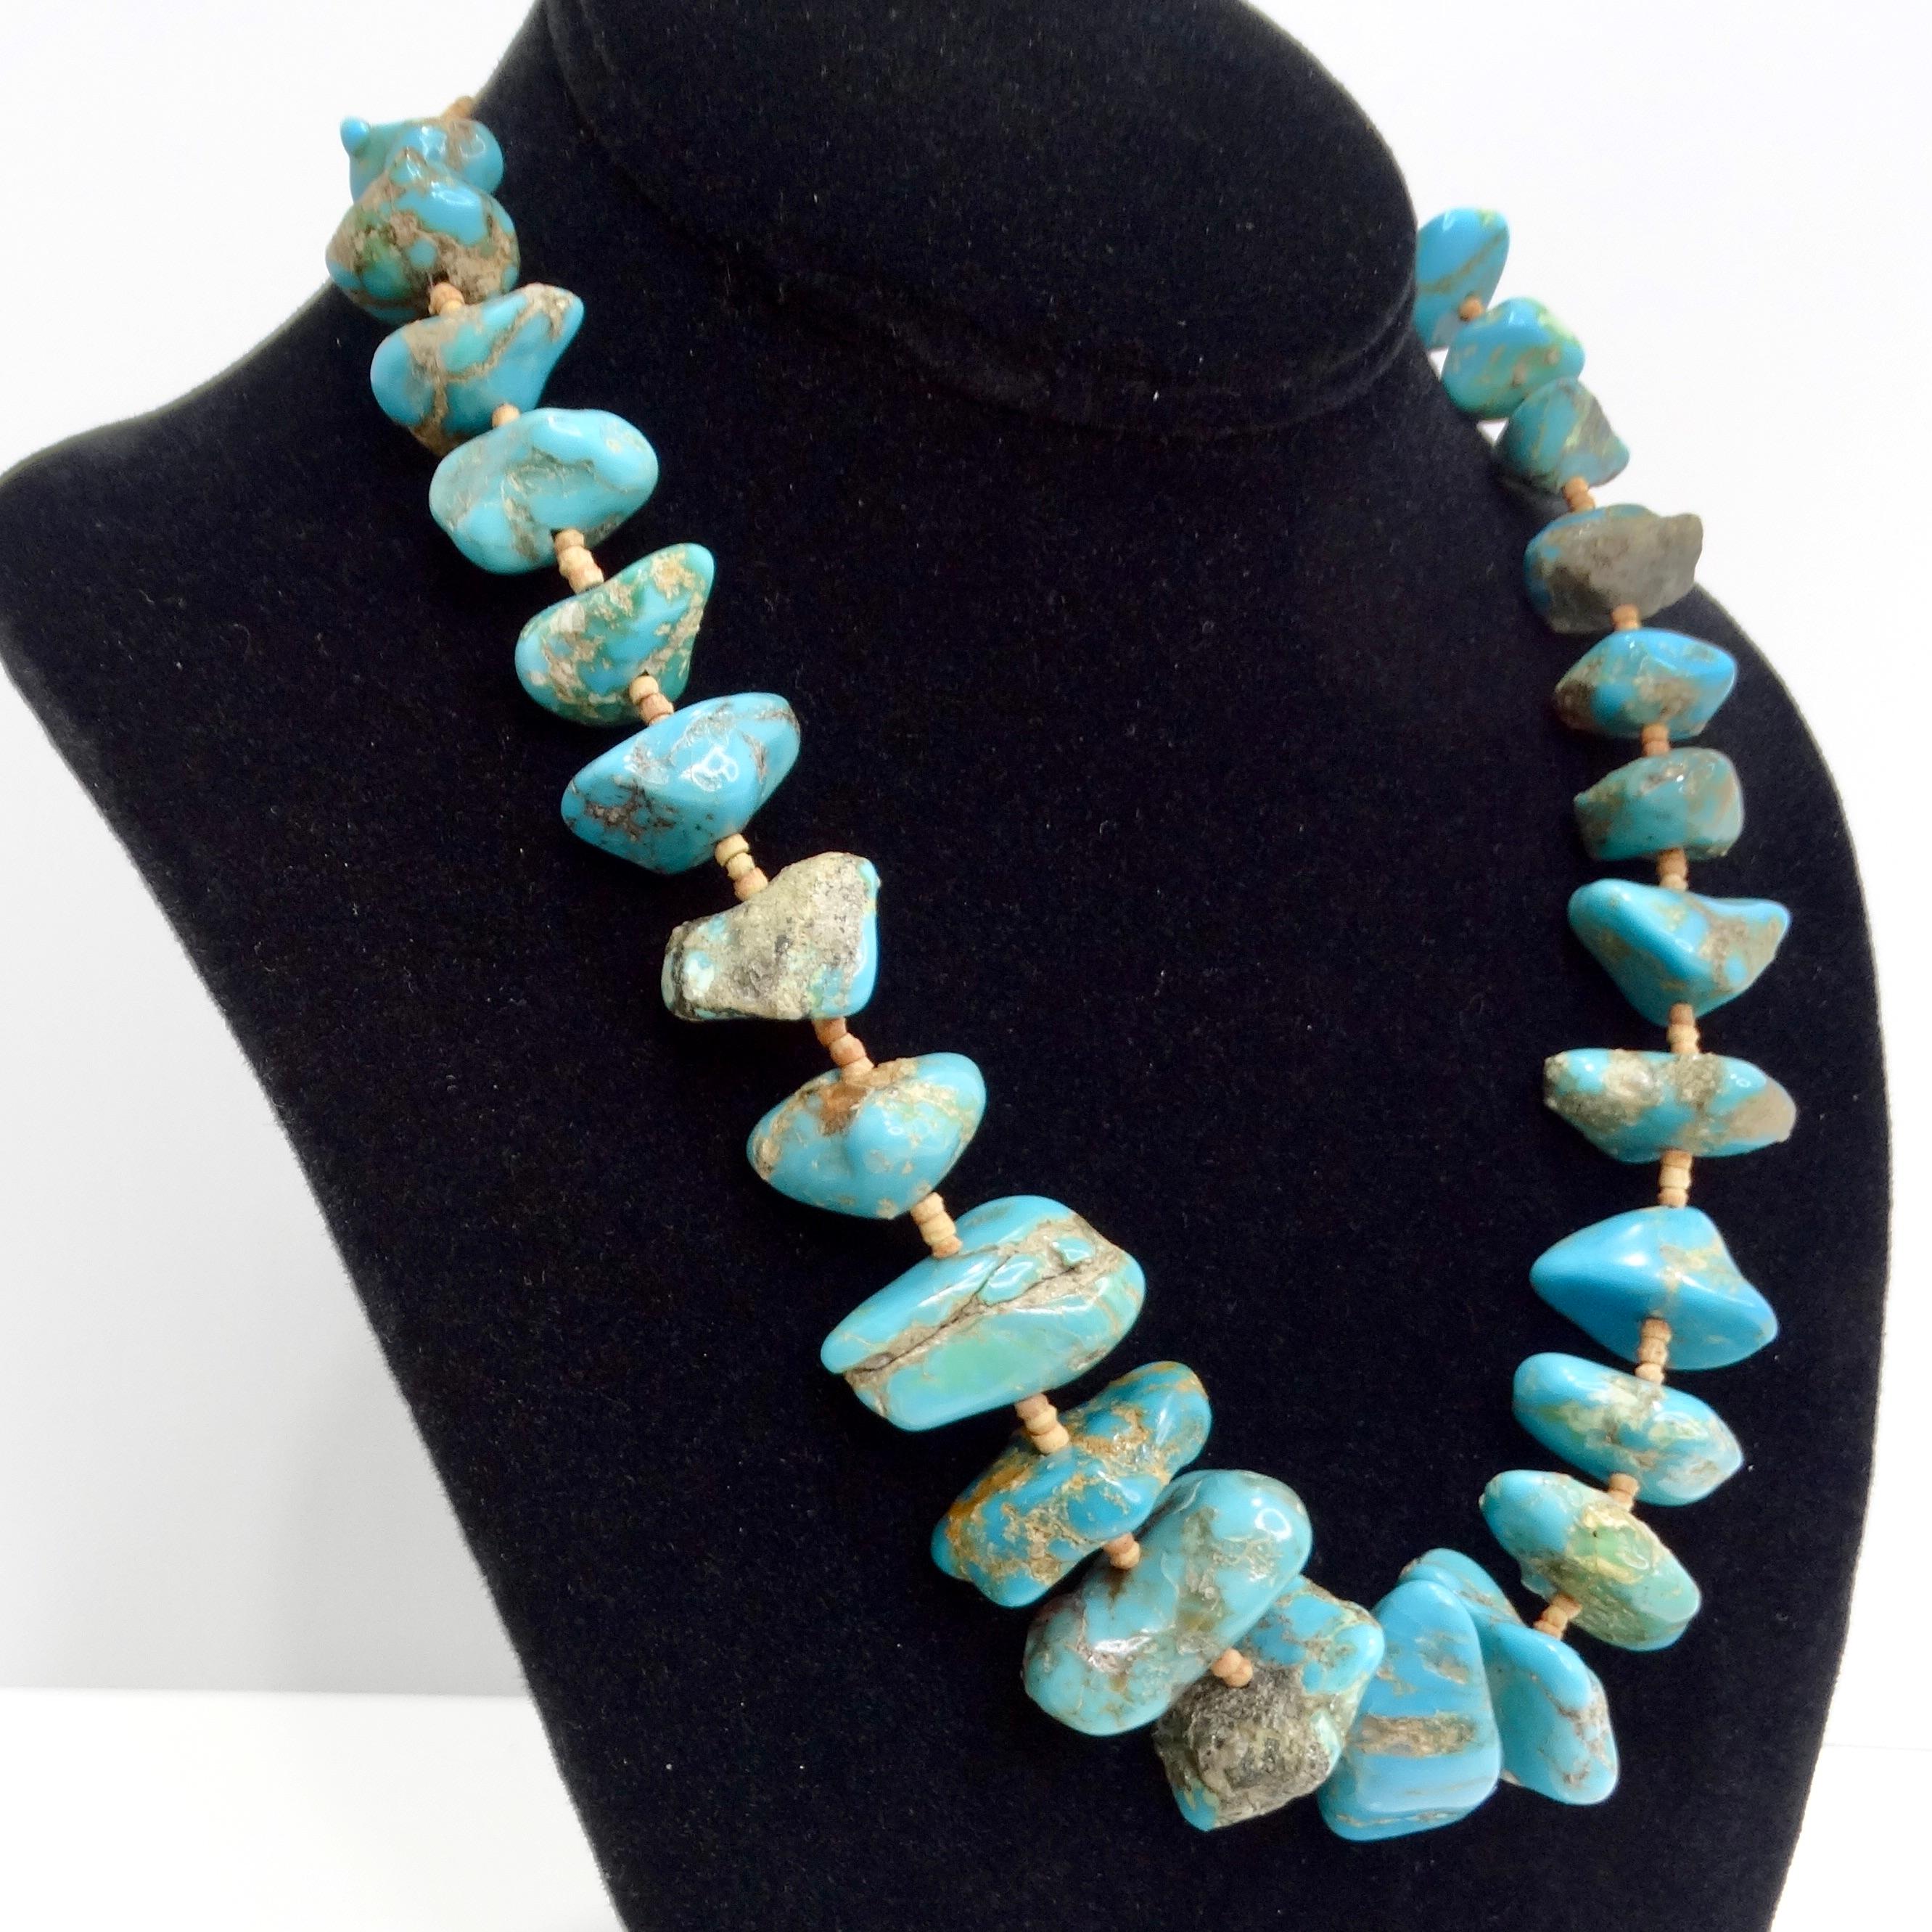 Die Navajo-Türkishalskette aus den 1960er Jahren ist ein auffälliges Vintage-Stück, das die Essenz der Navajo-Handwerkskunst und den kühnen Stil des Südwestens einfängt. Diese wunderschöne Halskette besteht aus leuchtend blauen Türkissteinen mit